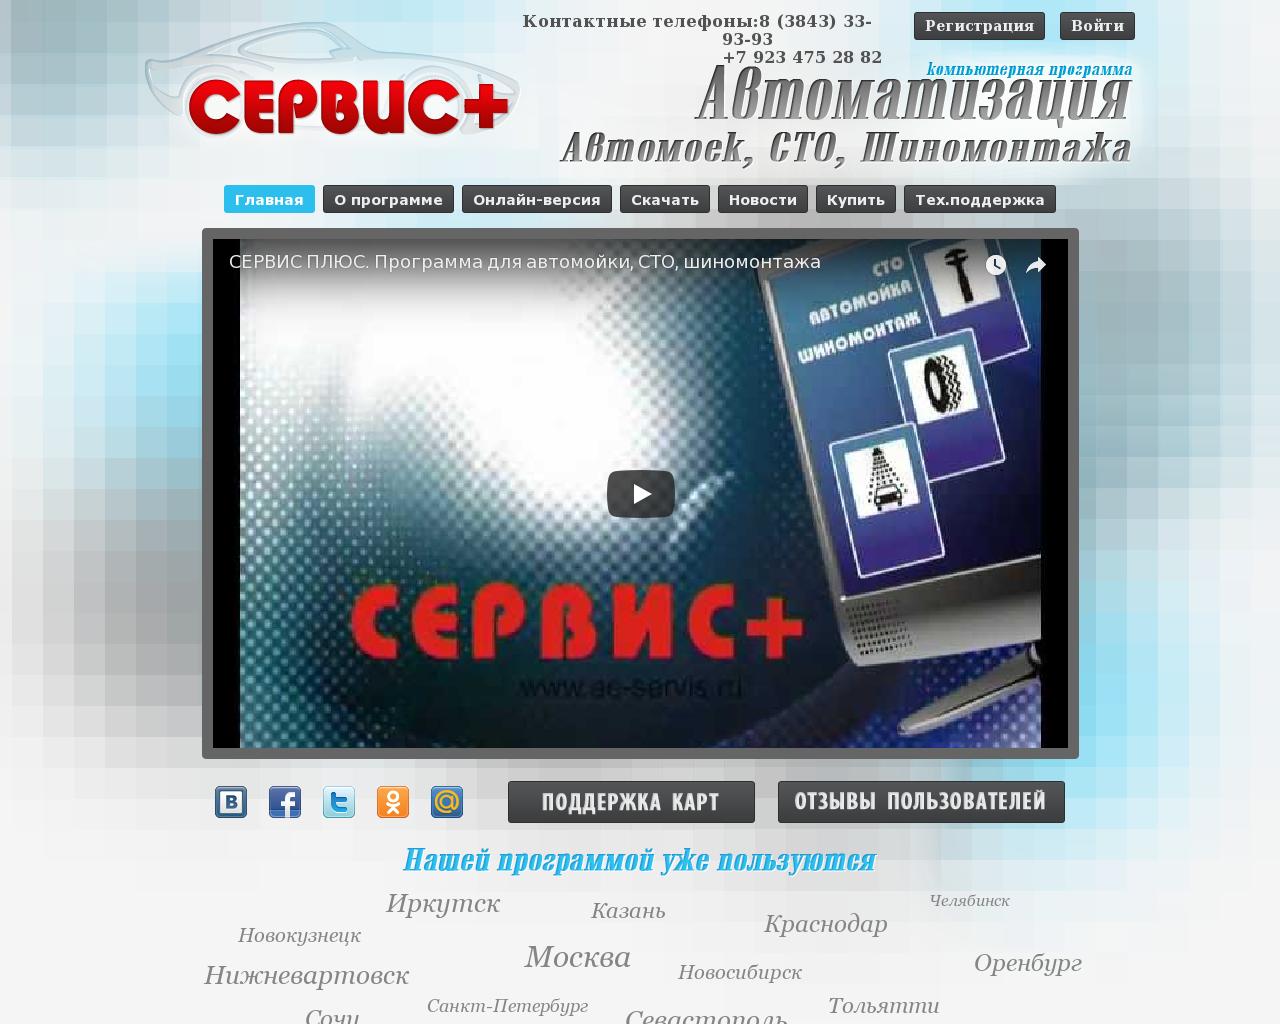 Изображение сайта ae-servis.ru в разрешении 1280x1024